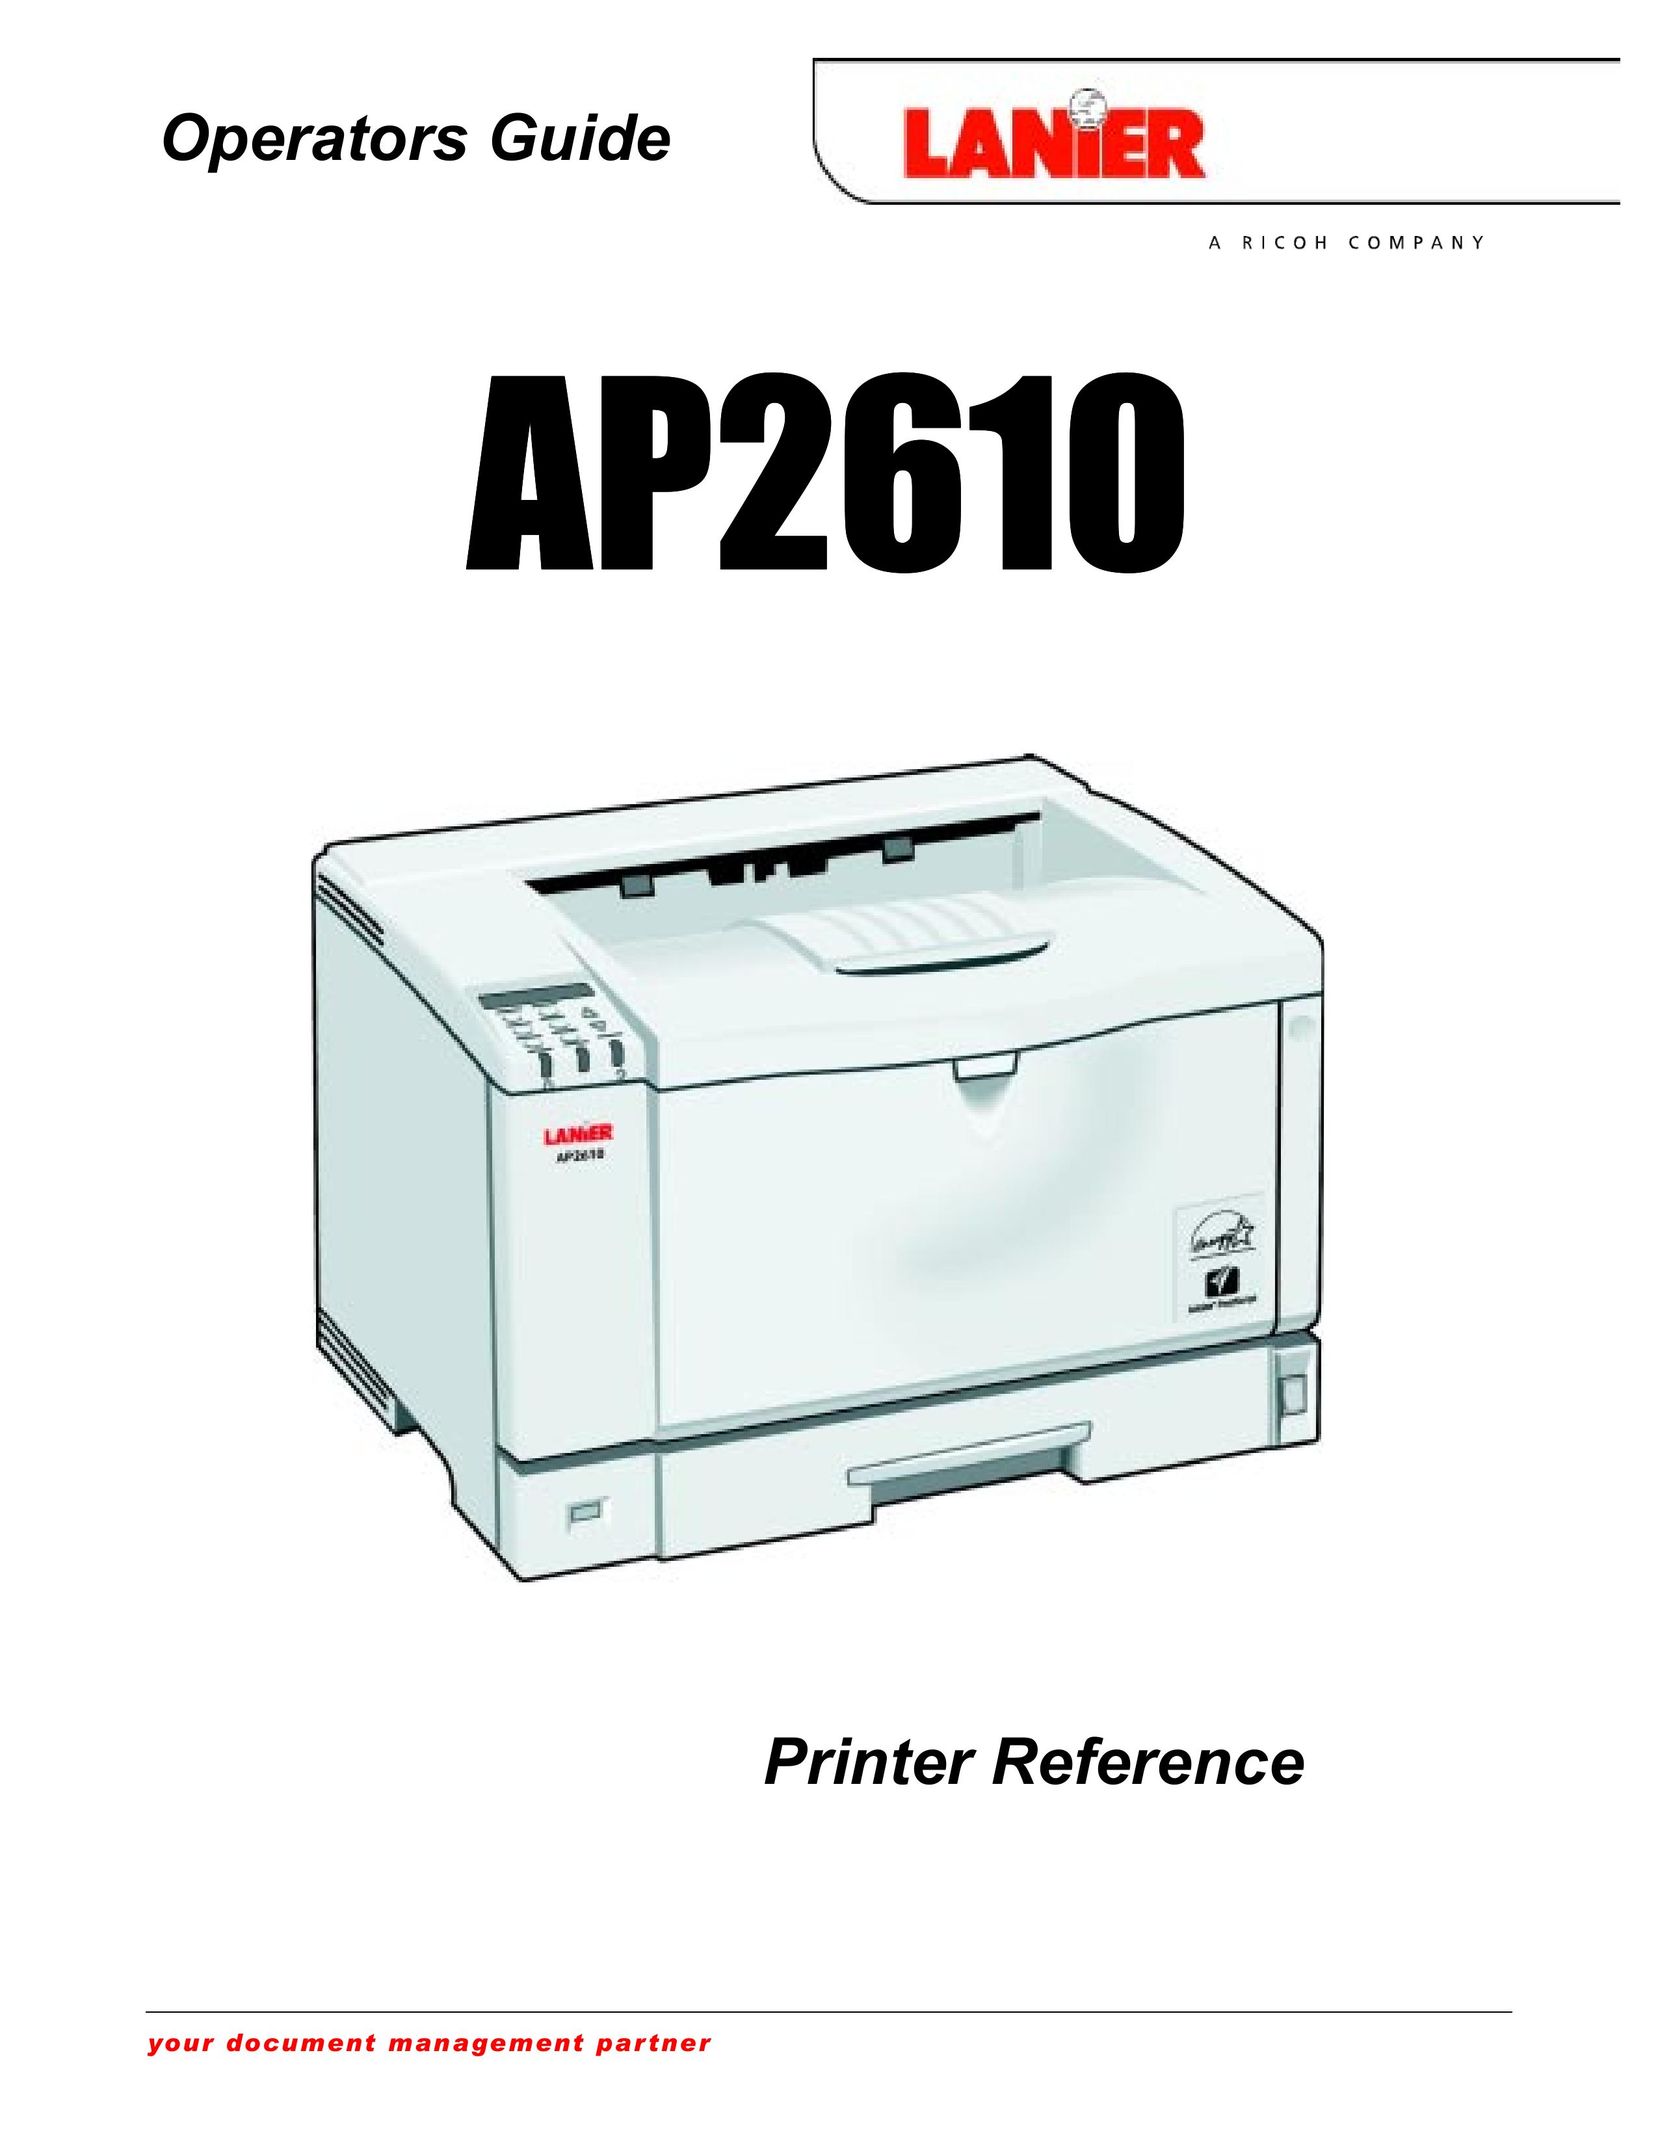 Lanier AP2610 Printer User Manual